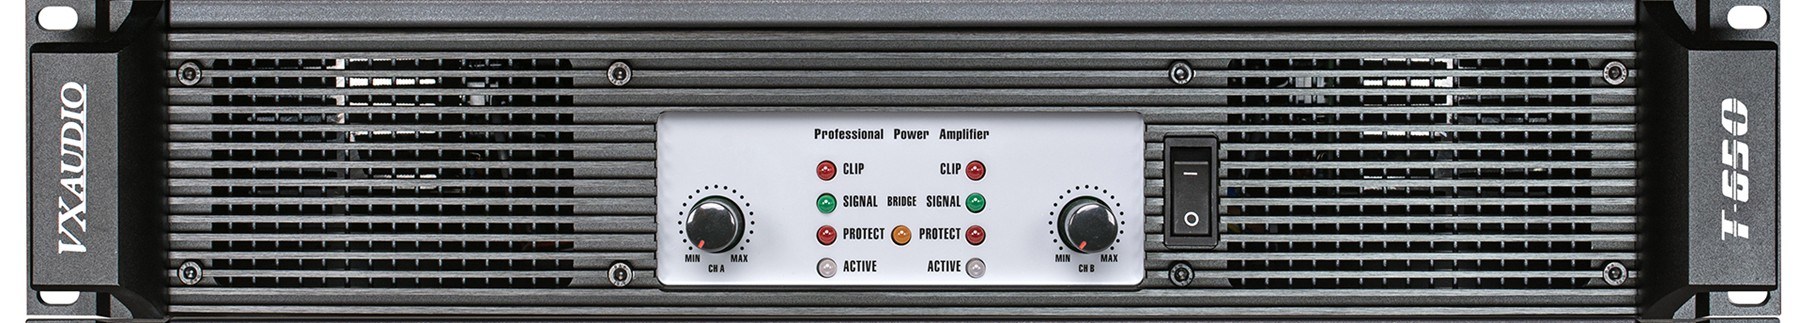 2 Channels Power Amplifier (T-650)